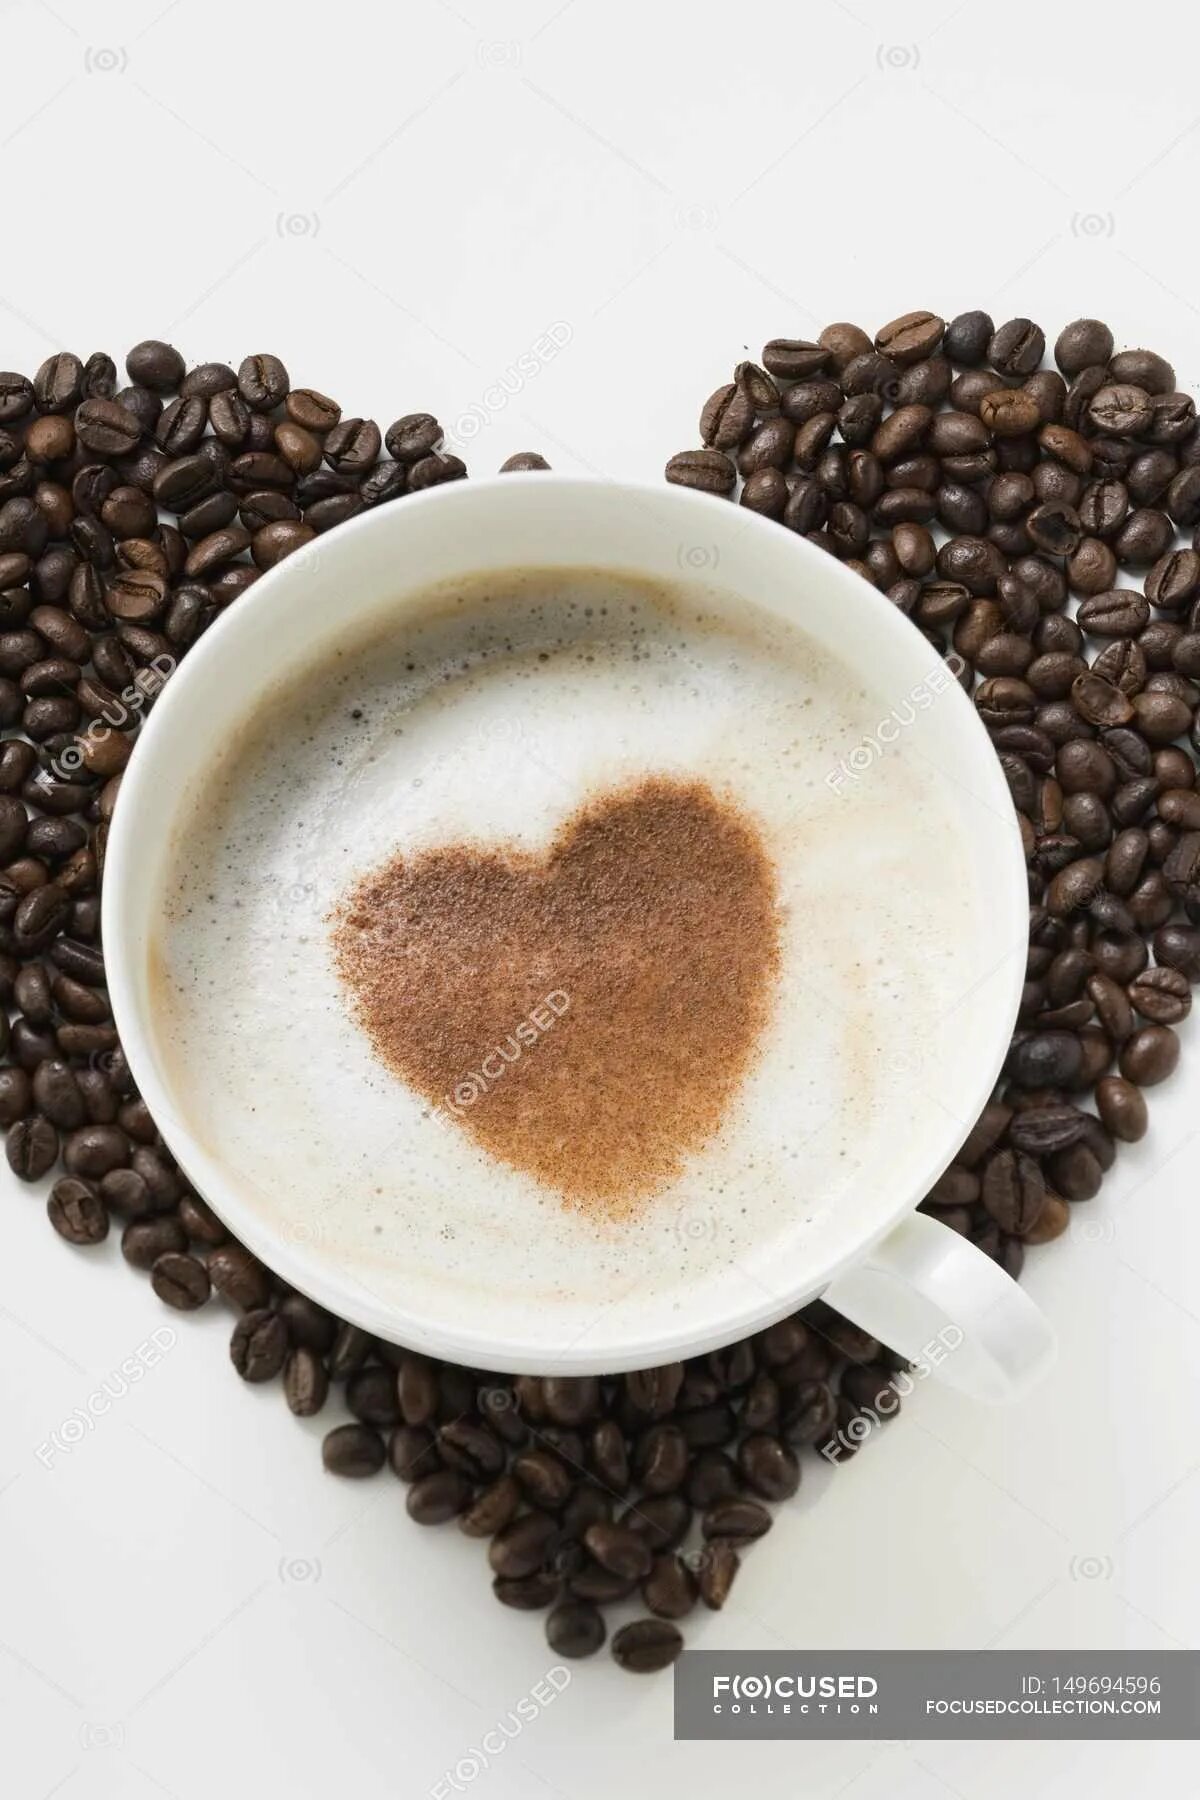 Удачного дня и настроения мужчине. Чашечка кофе для настроения. Доброе утро кофе. Хорошего дня кофе. Добрый день кофе.